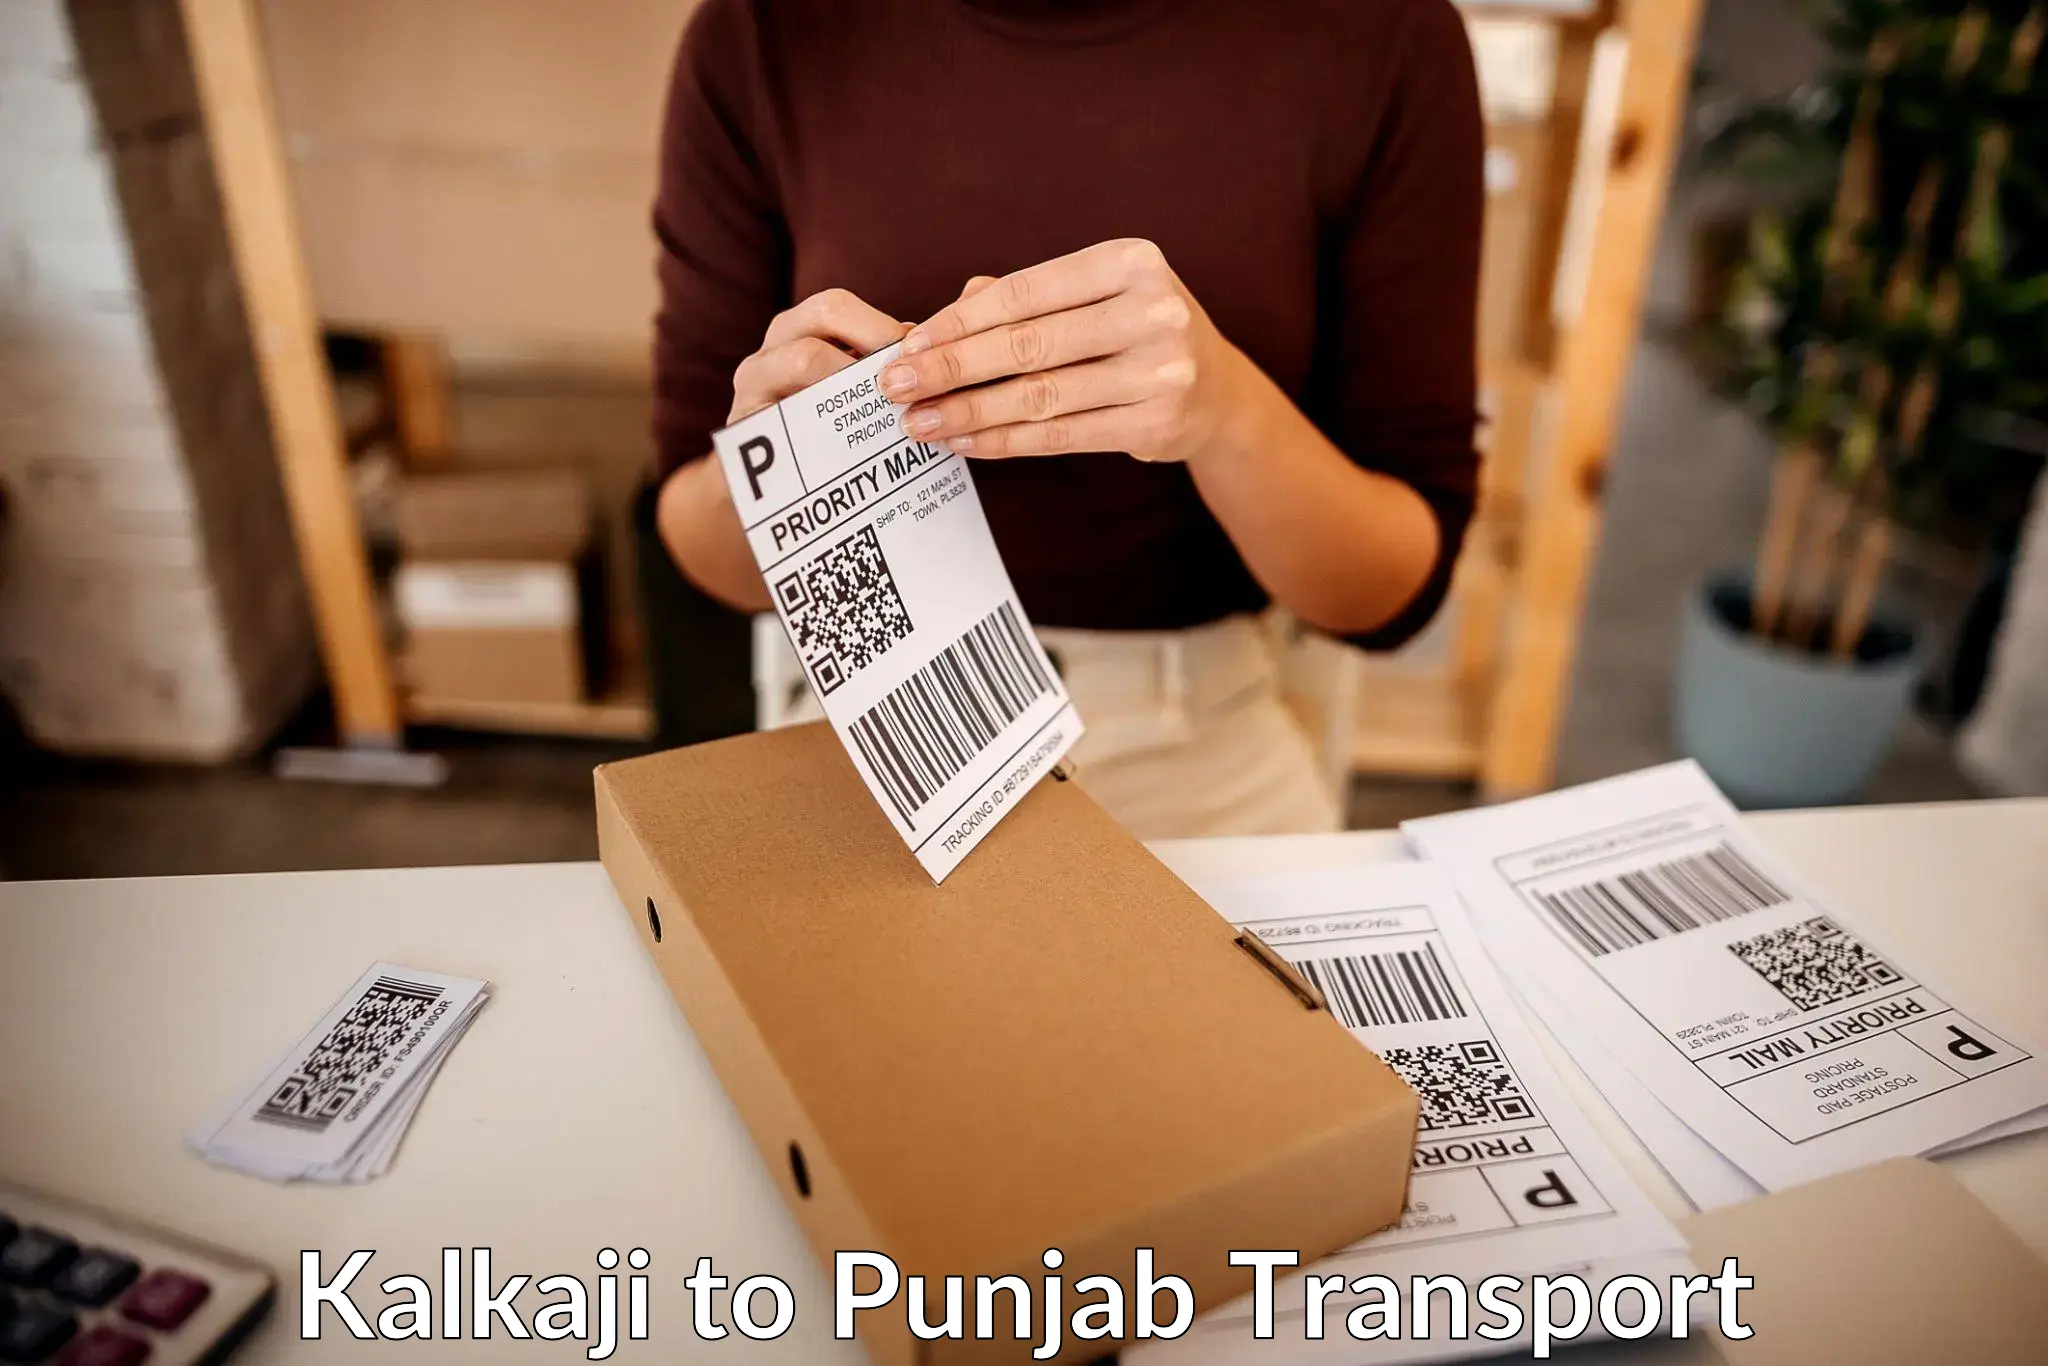 Online transport service Kalkaji to Mohali